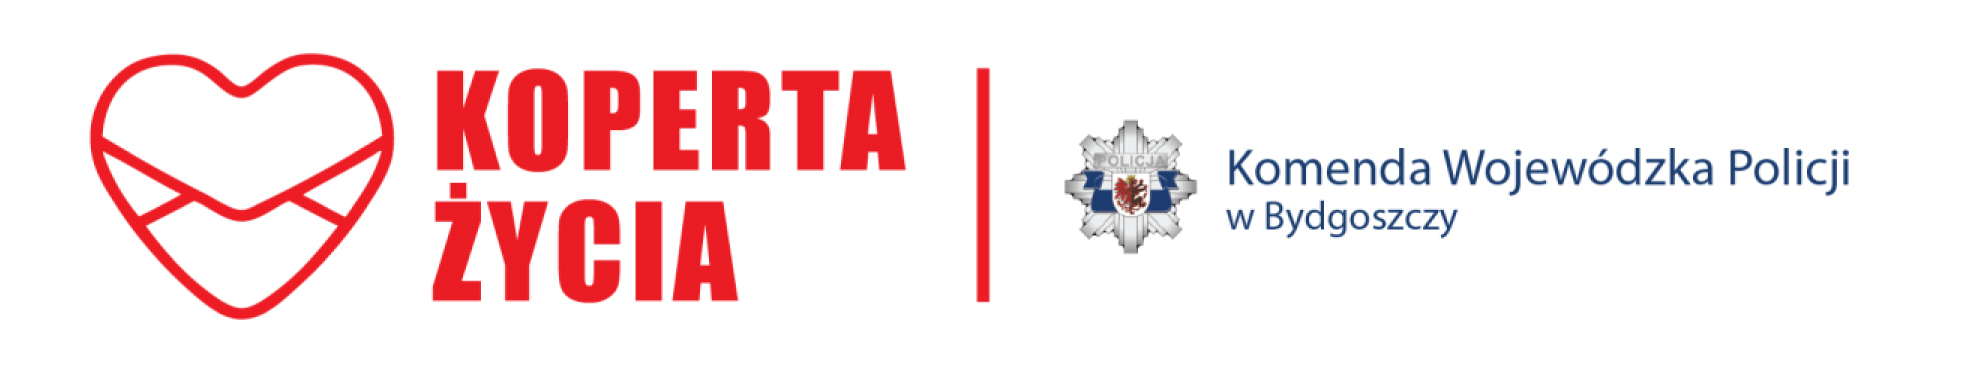 Logo Koperty życia i Komendy Wojewódzkiej Policji w Bydgoszczy